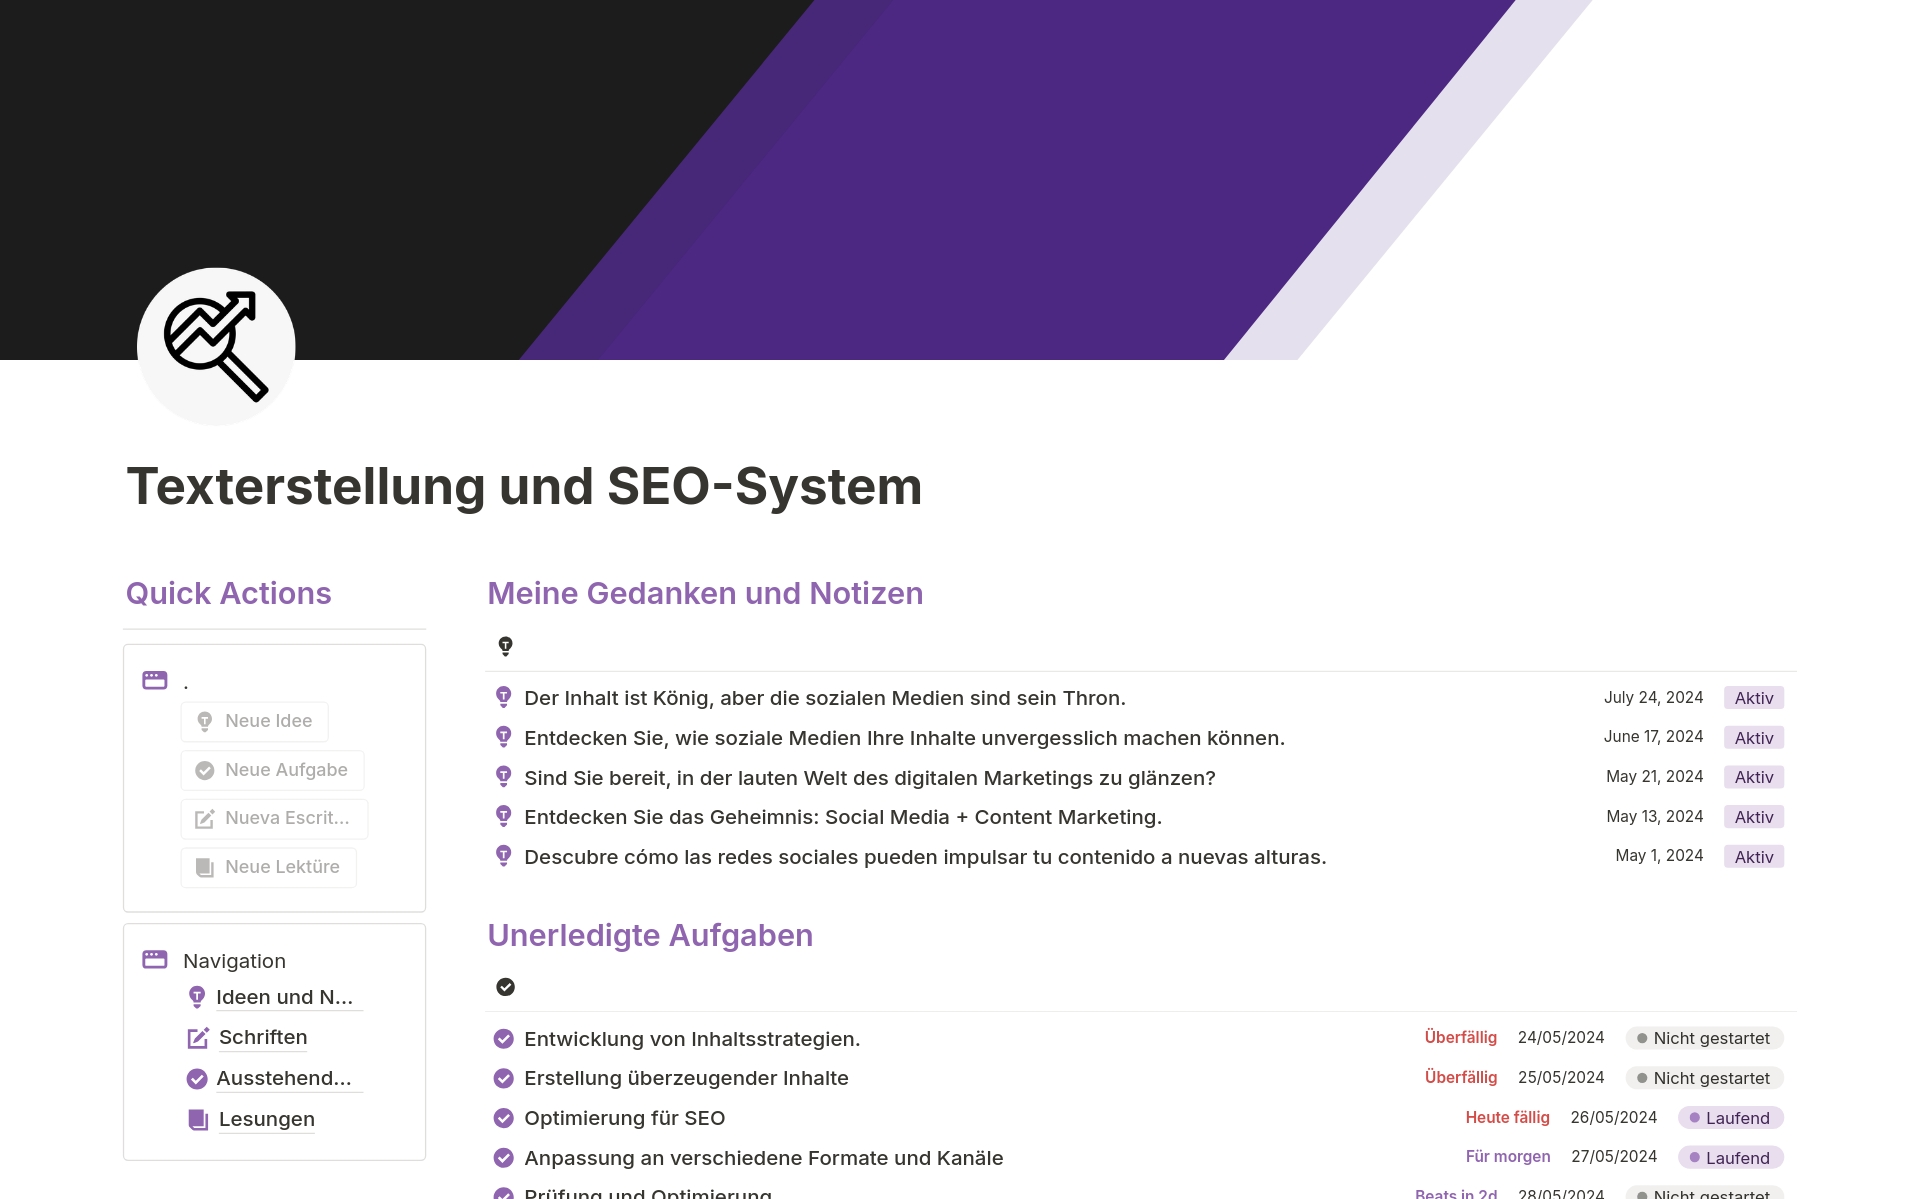 Vista previa de una plantilla para Texterstellung und SEO-System